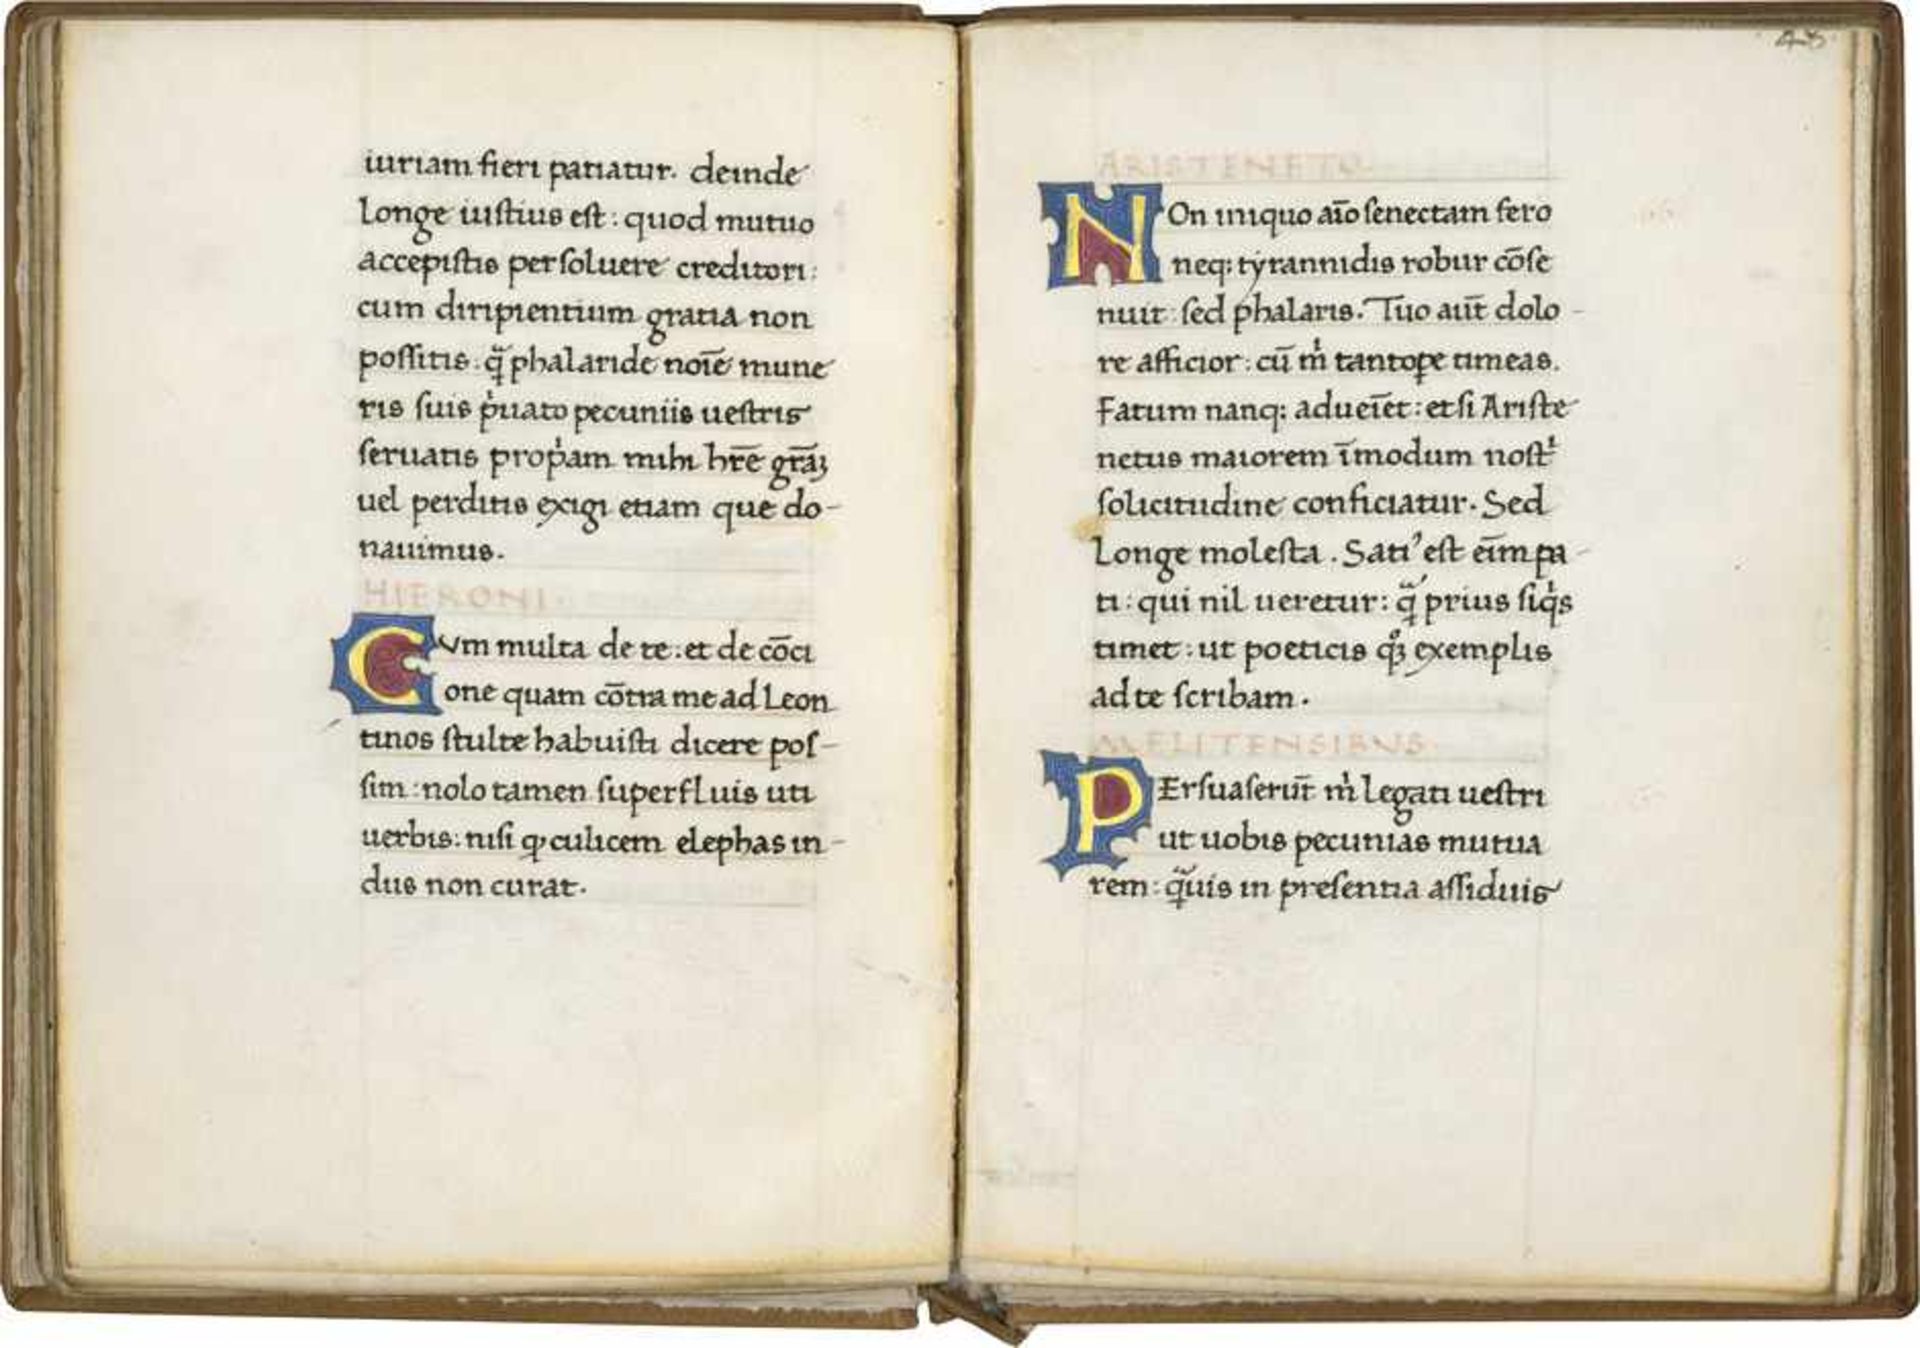 Epistole di Falaride, di Marco Bruto, di Diogene: Lateinische Handschrift auf Pergament.Bis dato